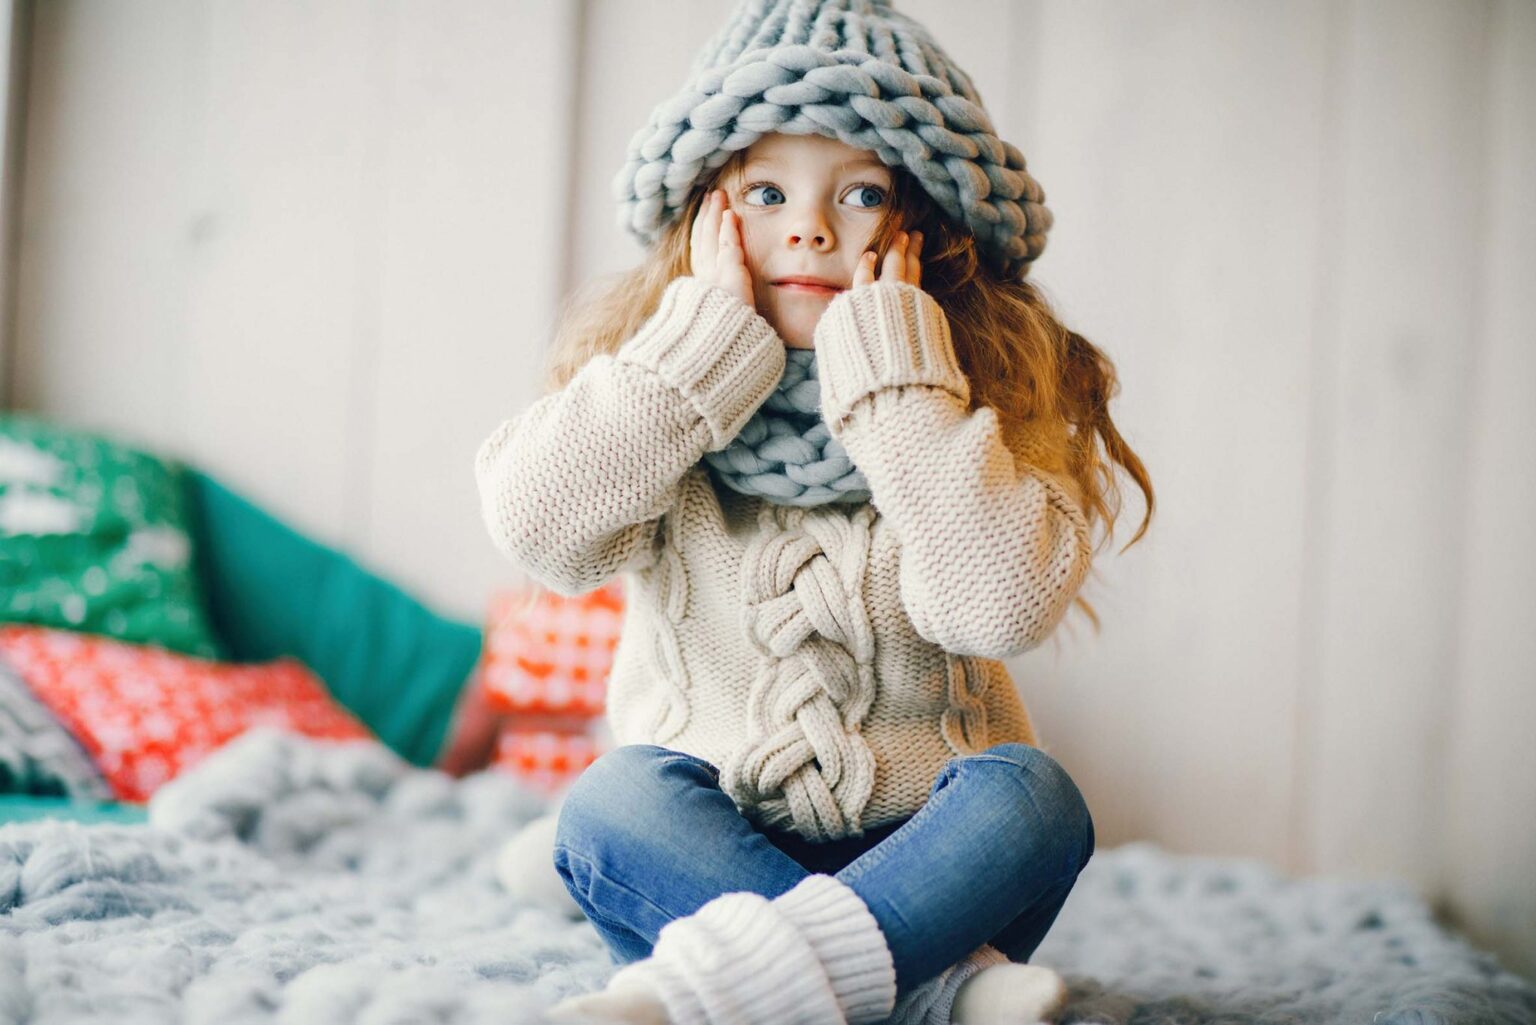 Criança vestindo roupas quentinhas durante o inverno.